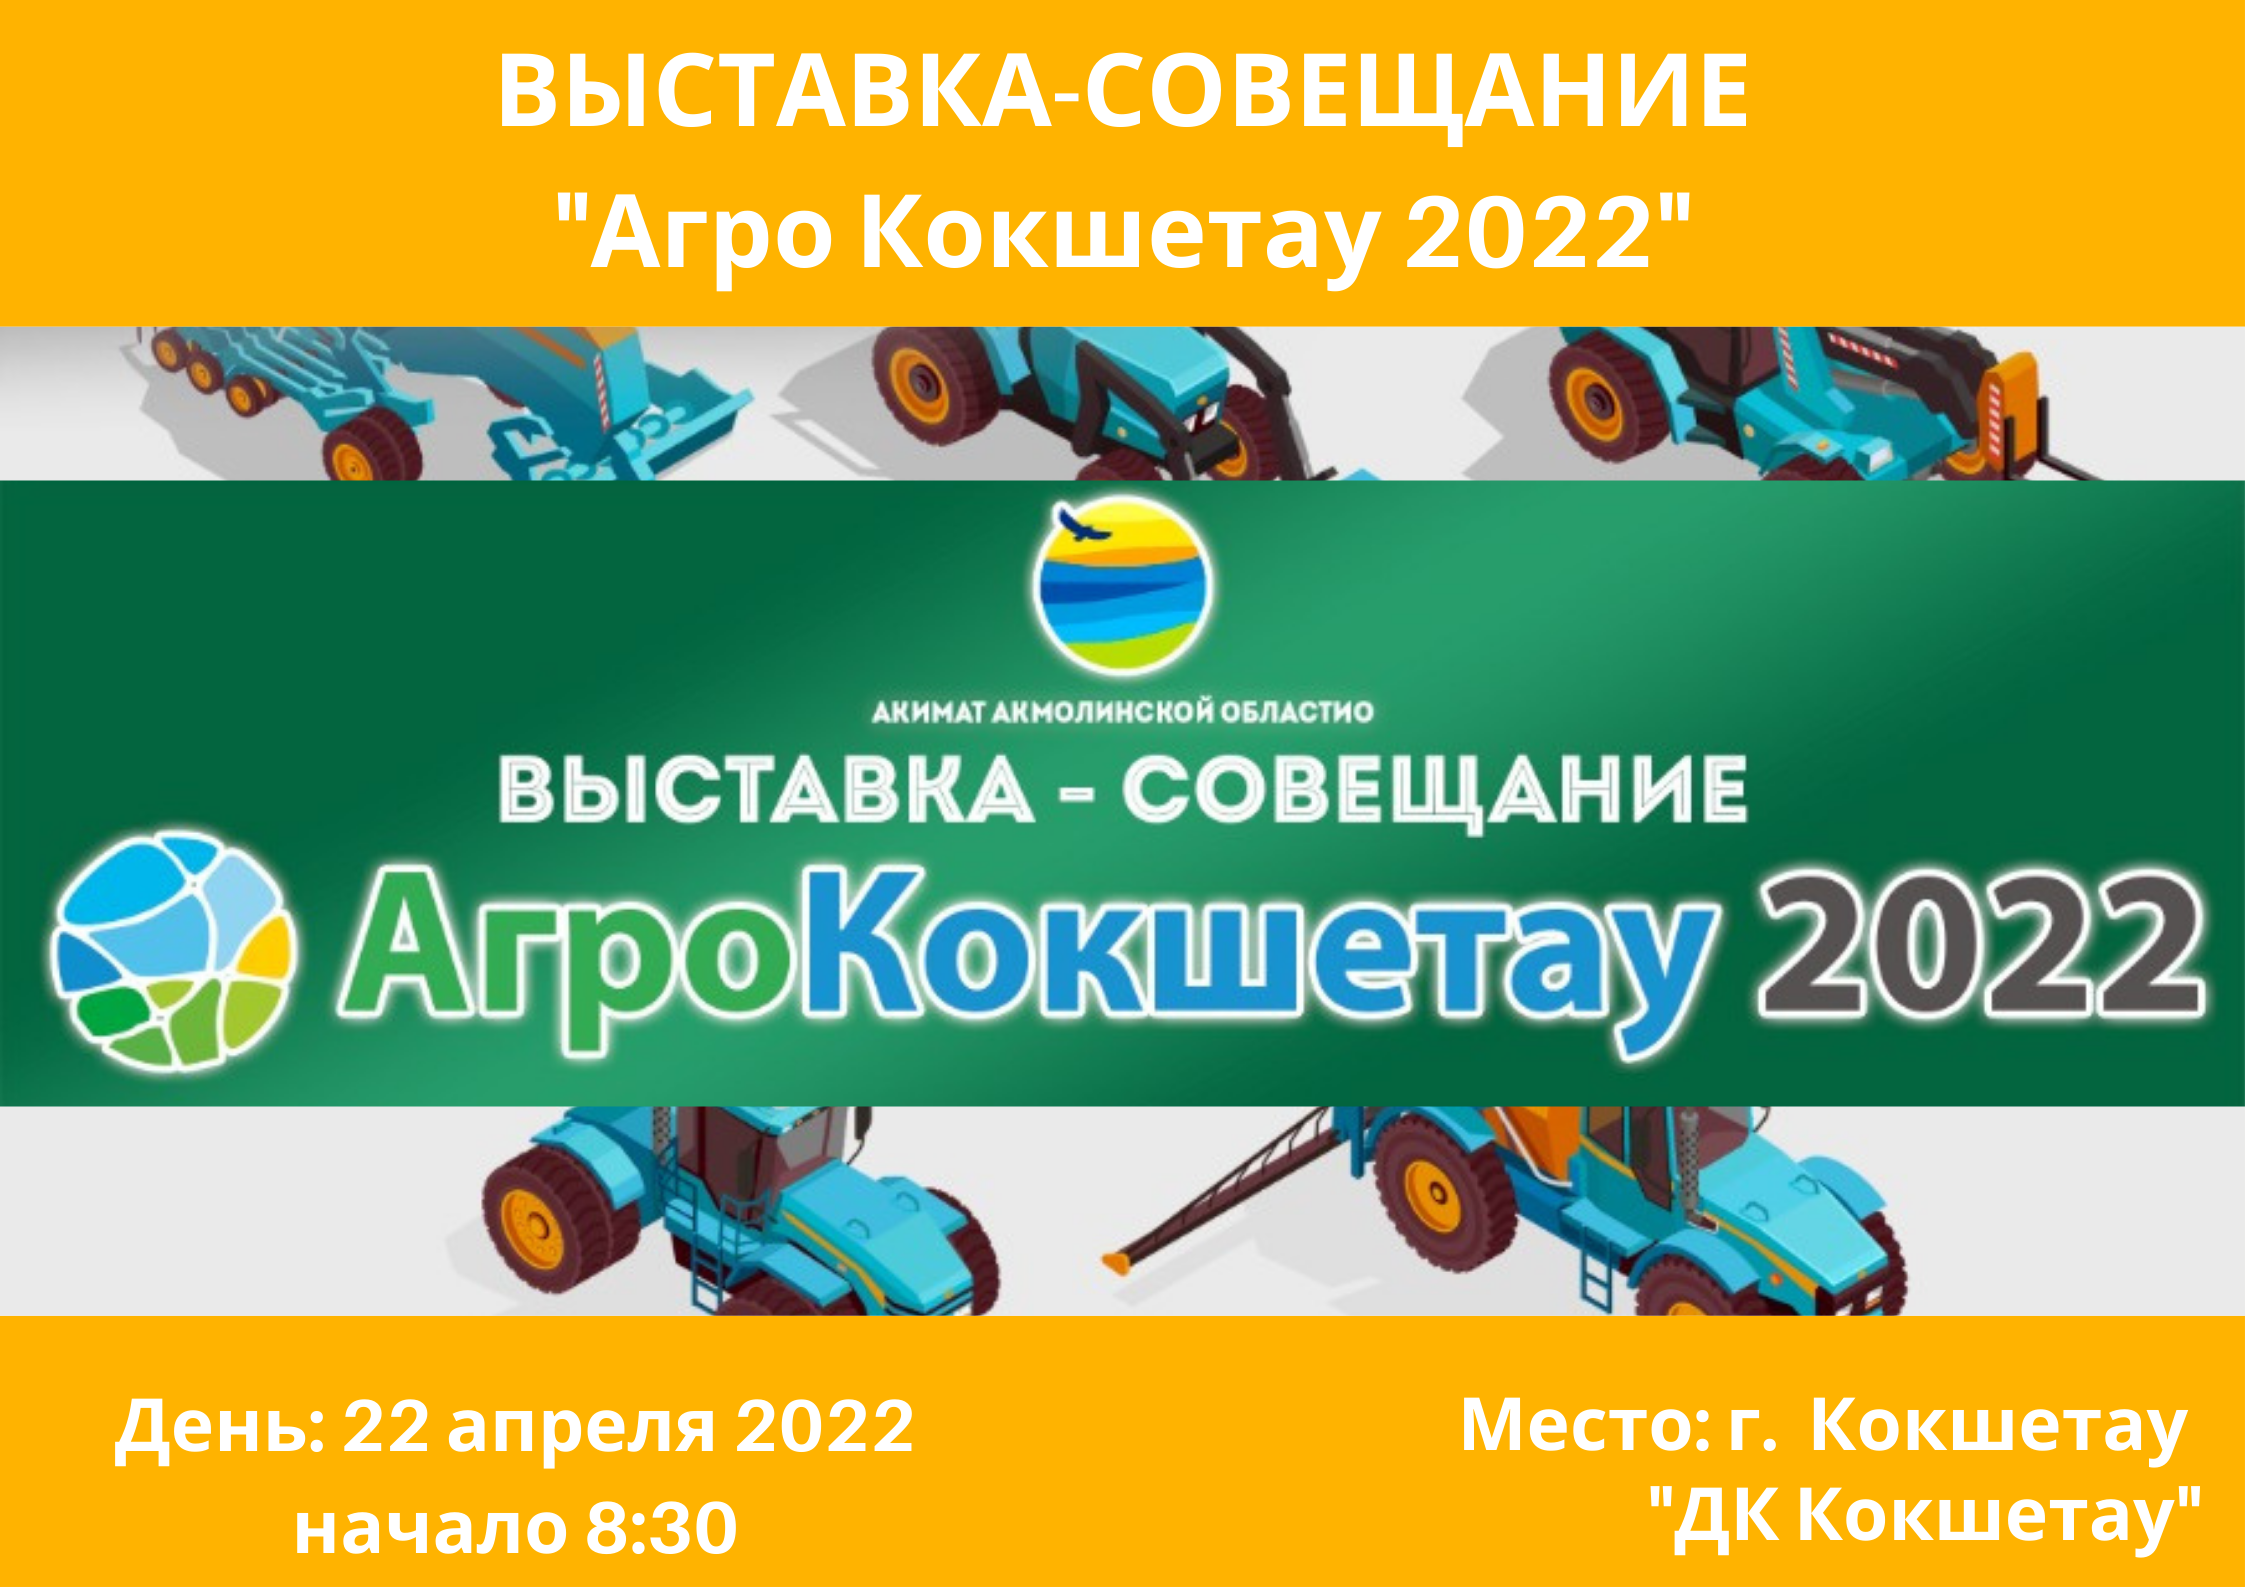 РЕАГИОНАЛЬНАЯ ВЫСТАВКА «АГРО КОКШЕТАУ 2022»